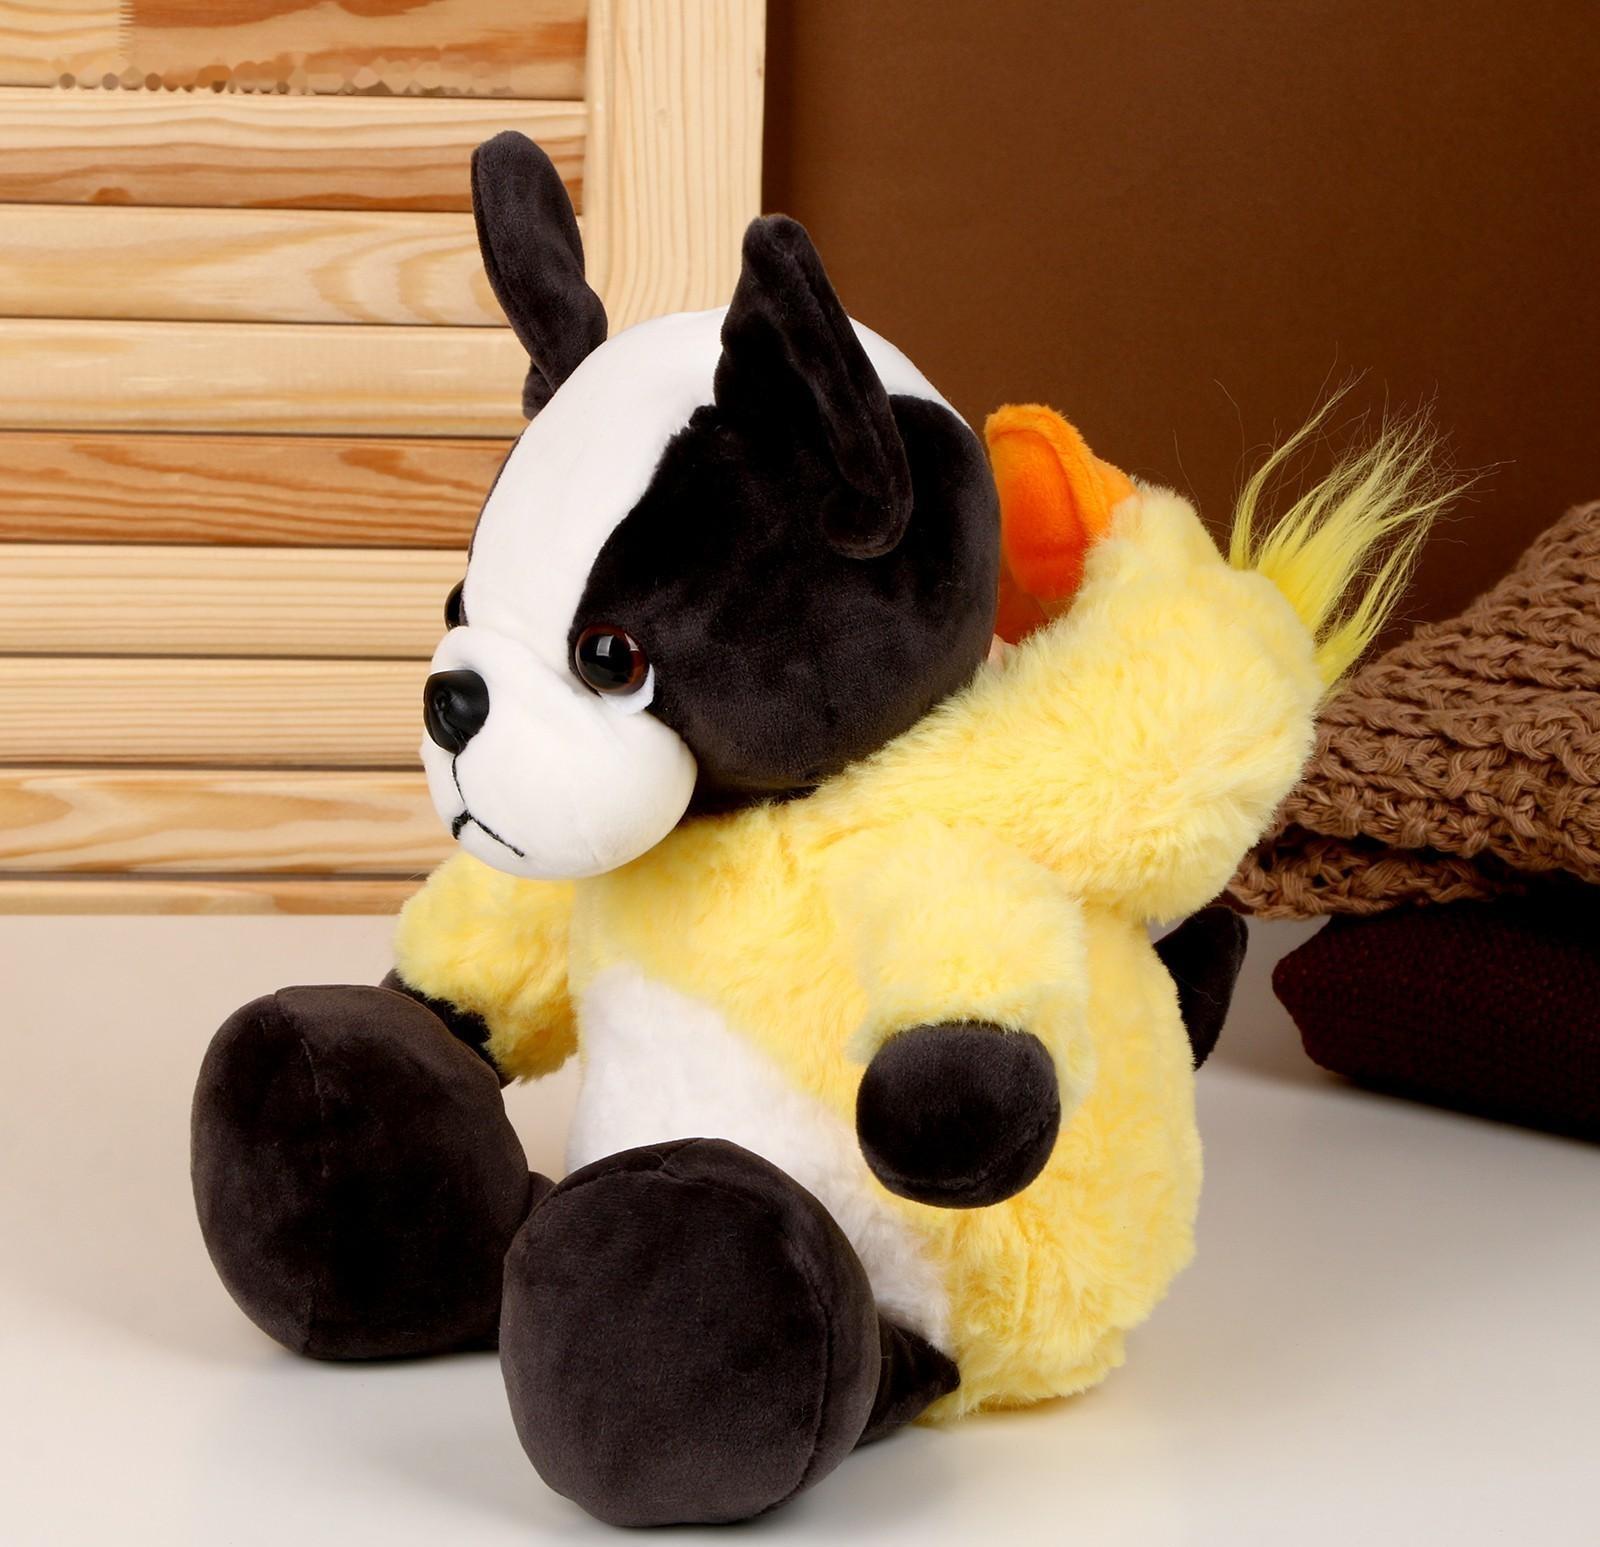 Мягкая игрушка «Собака» в костюме утки, 30 см, цвет жёлтый